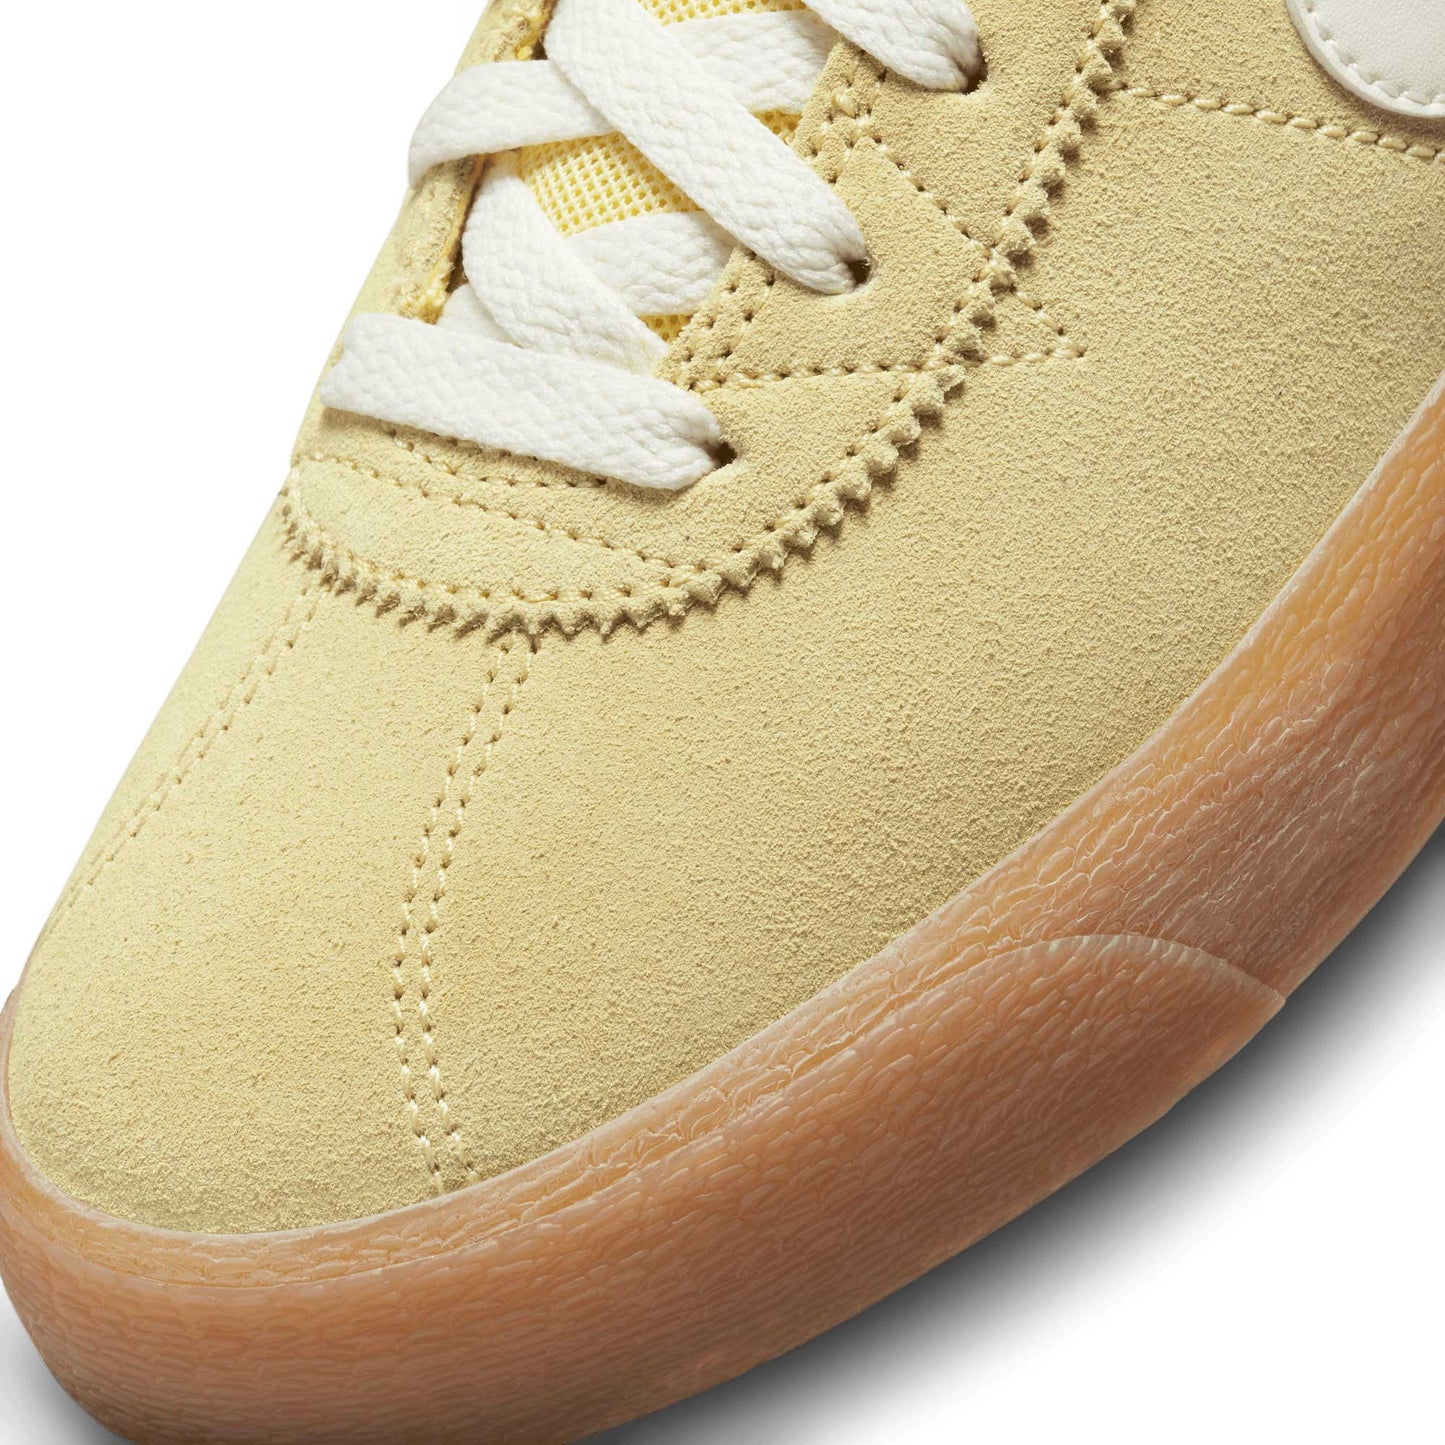 Nike SB Bruin High, lemon wash/sail-lemon wash - Tiki Room Skateboards - 7